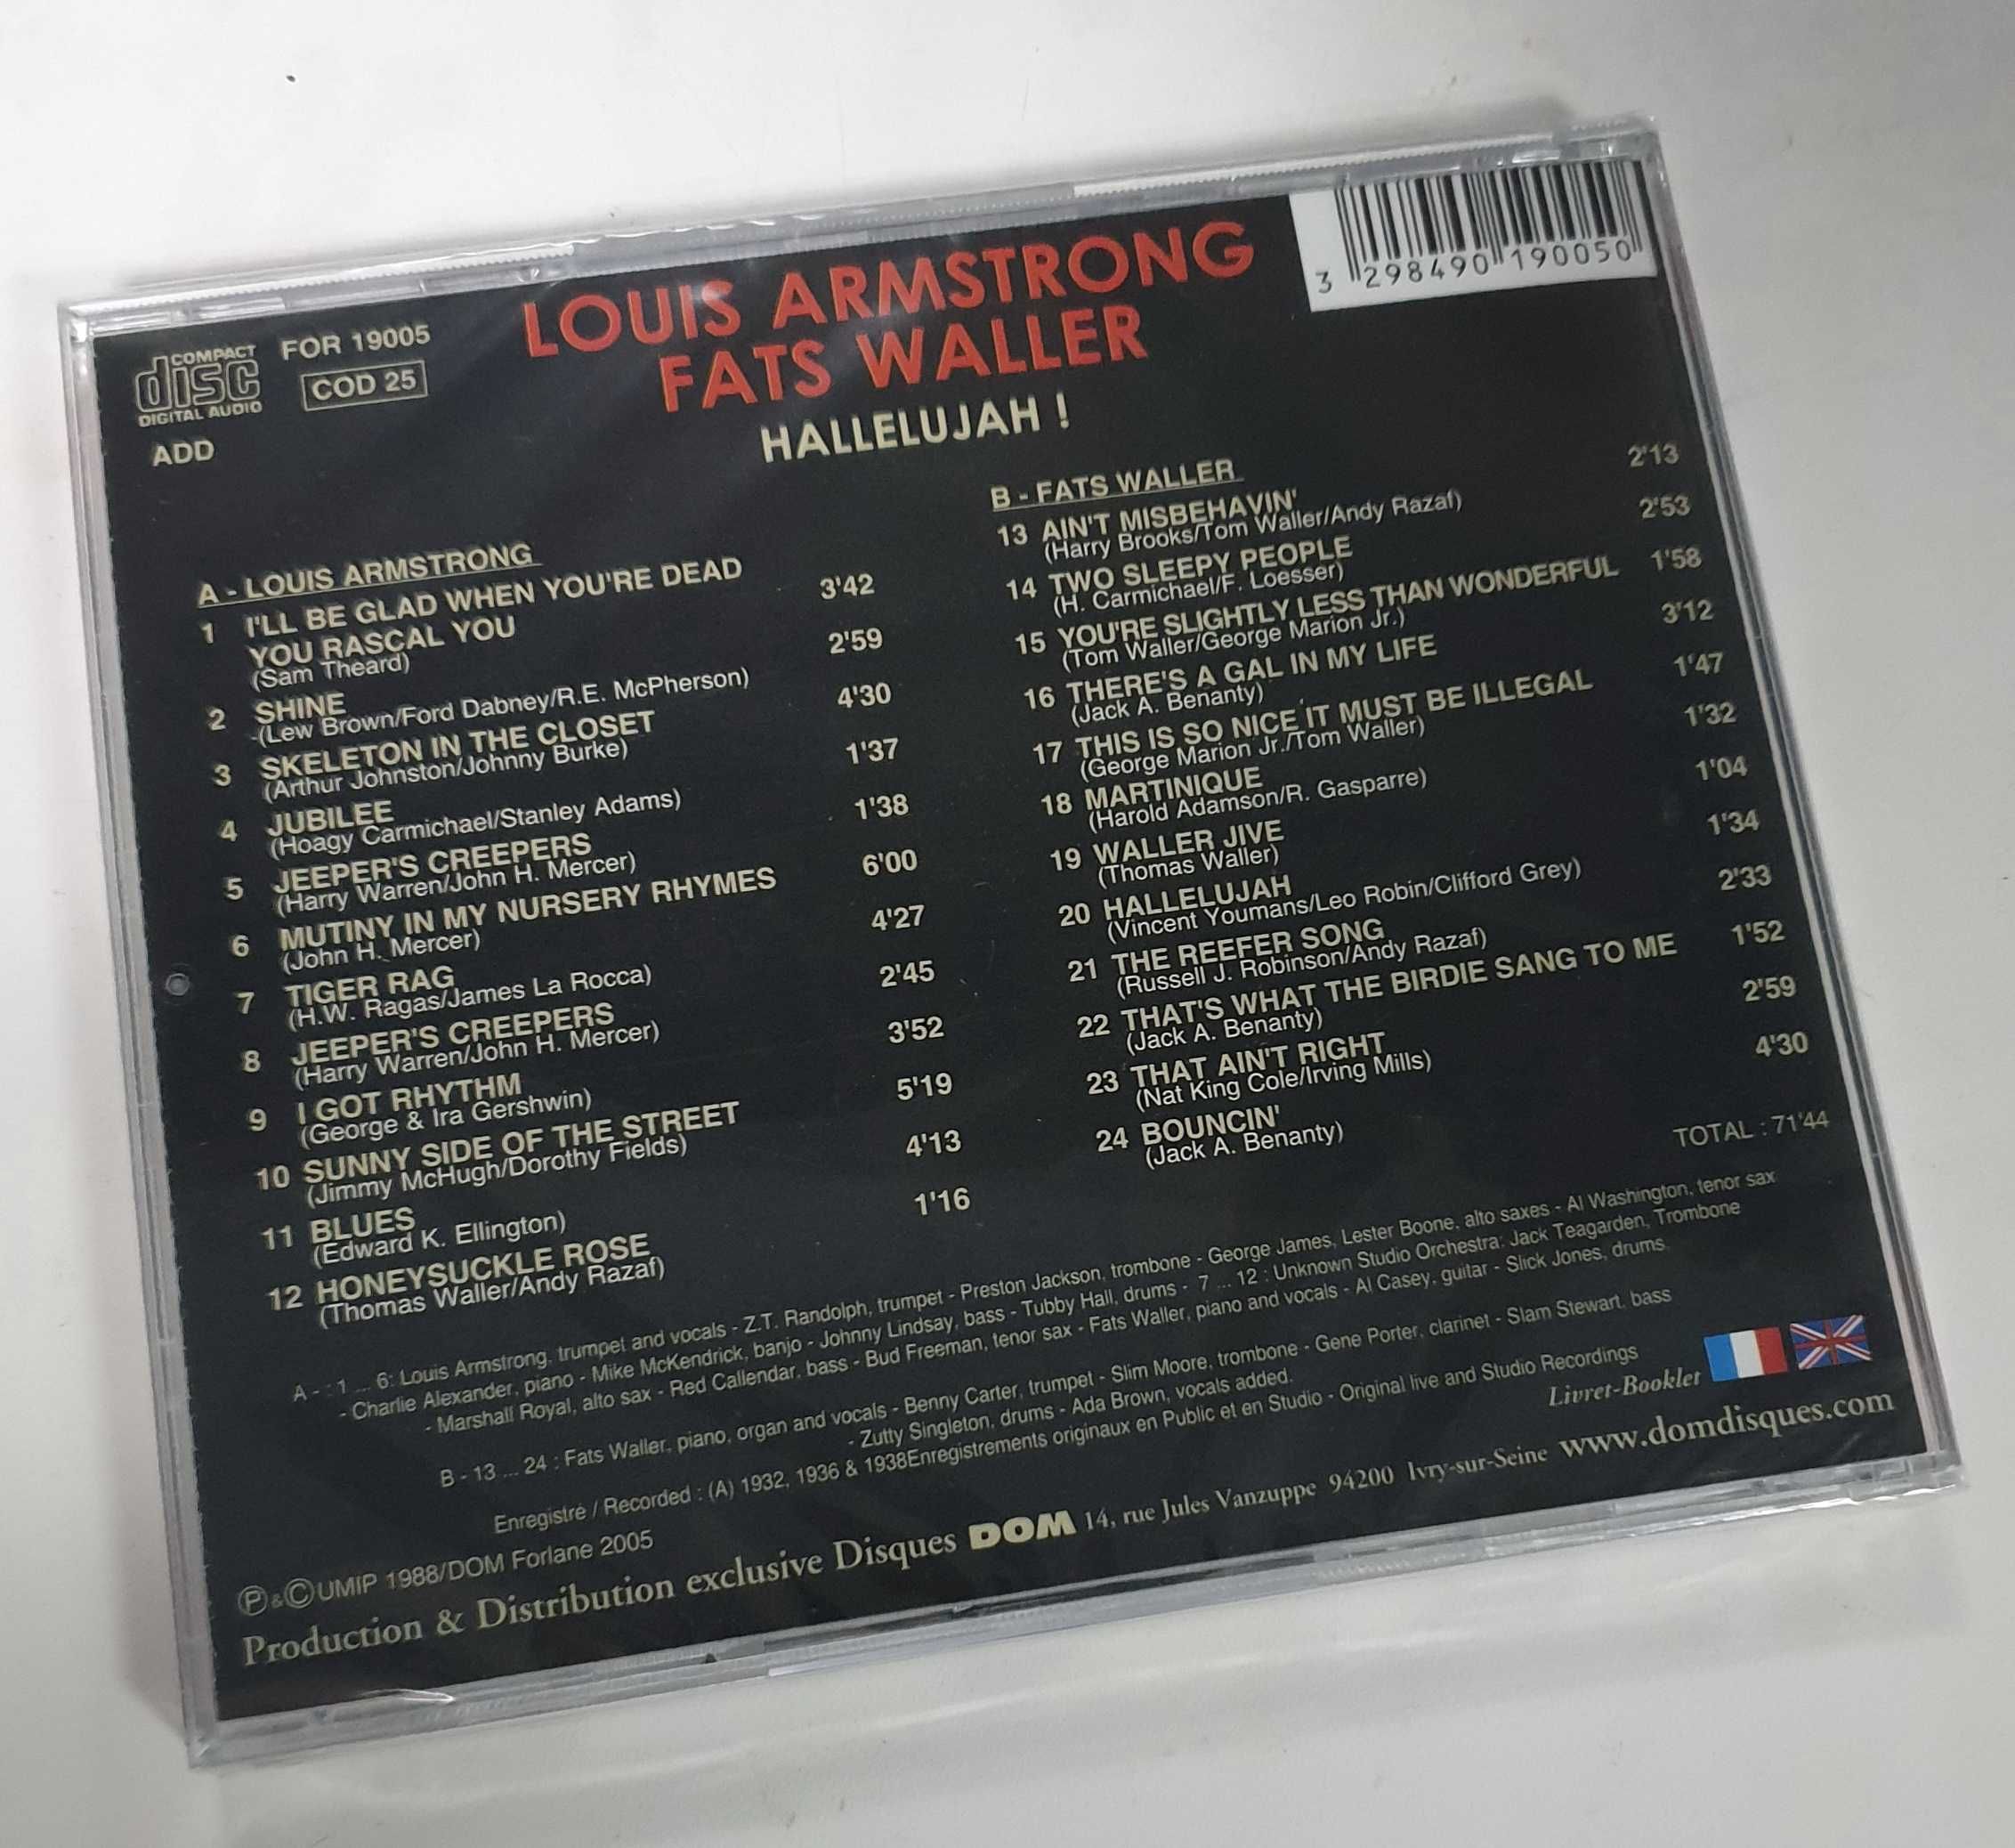 Louis Armstrong & Fats Waller "Hallelujah" CD диск jazz